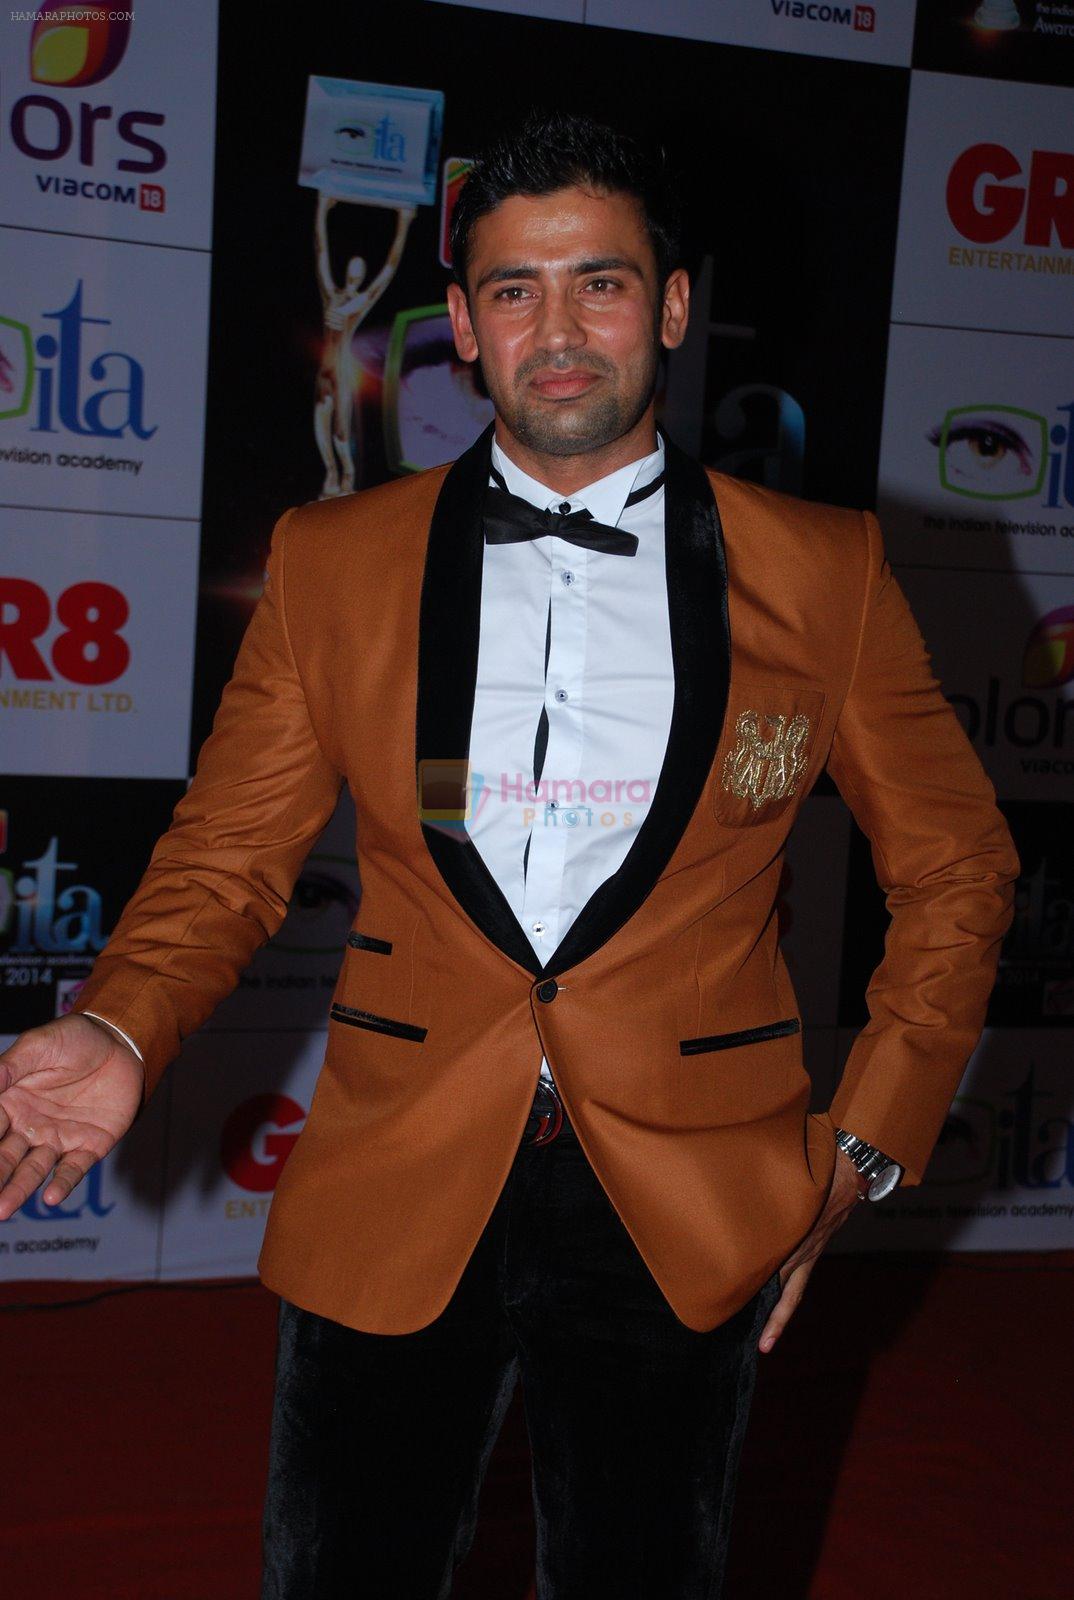 Sangram Singh at ITA Awards red carpet in Mumbai on 1st Nov 2014